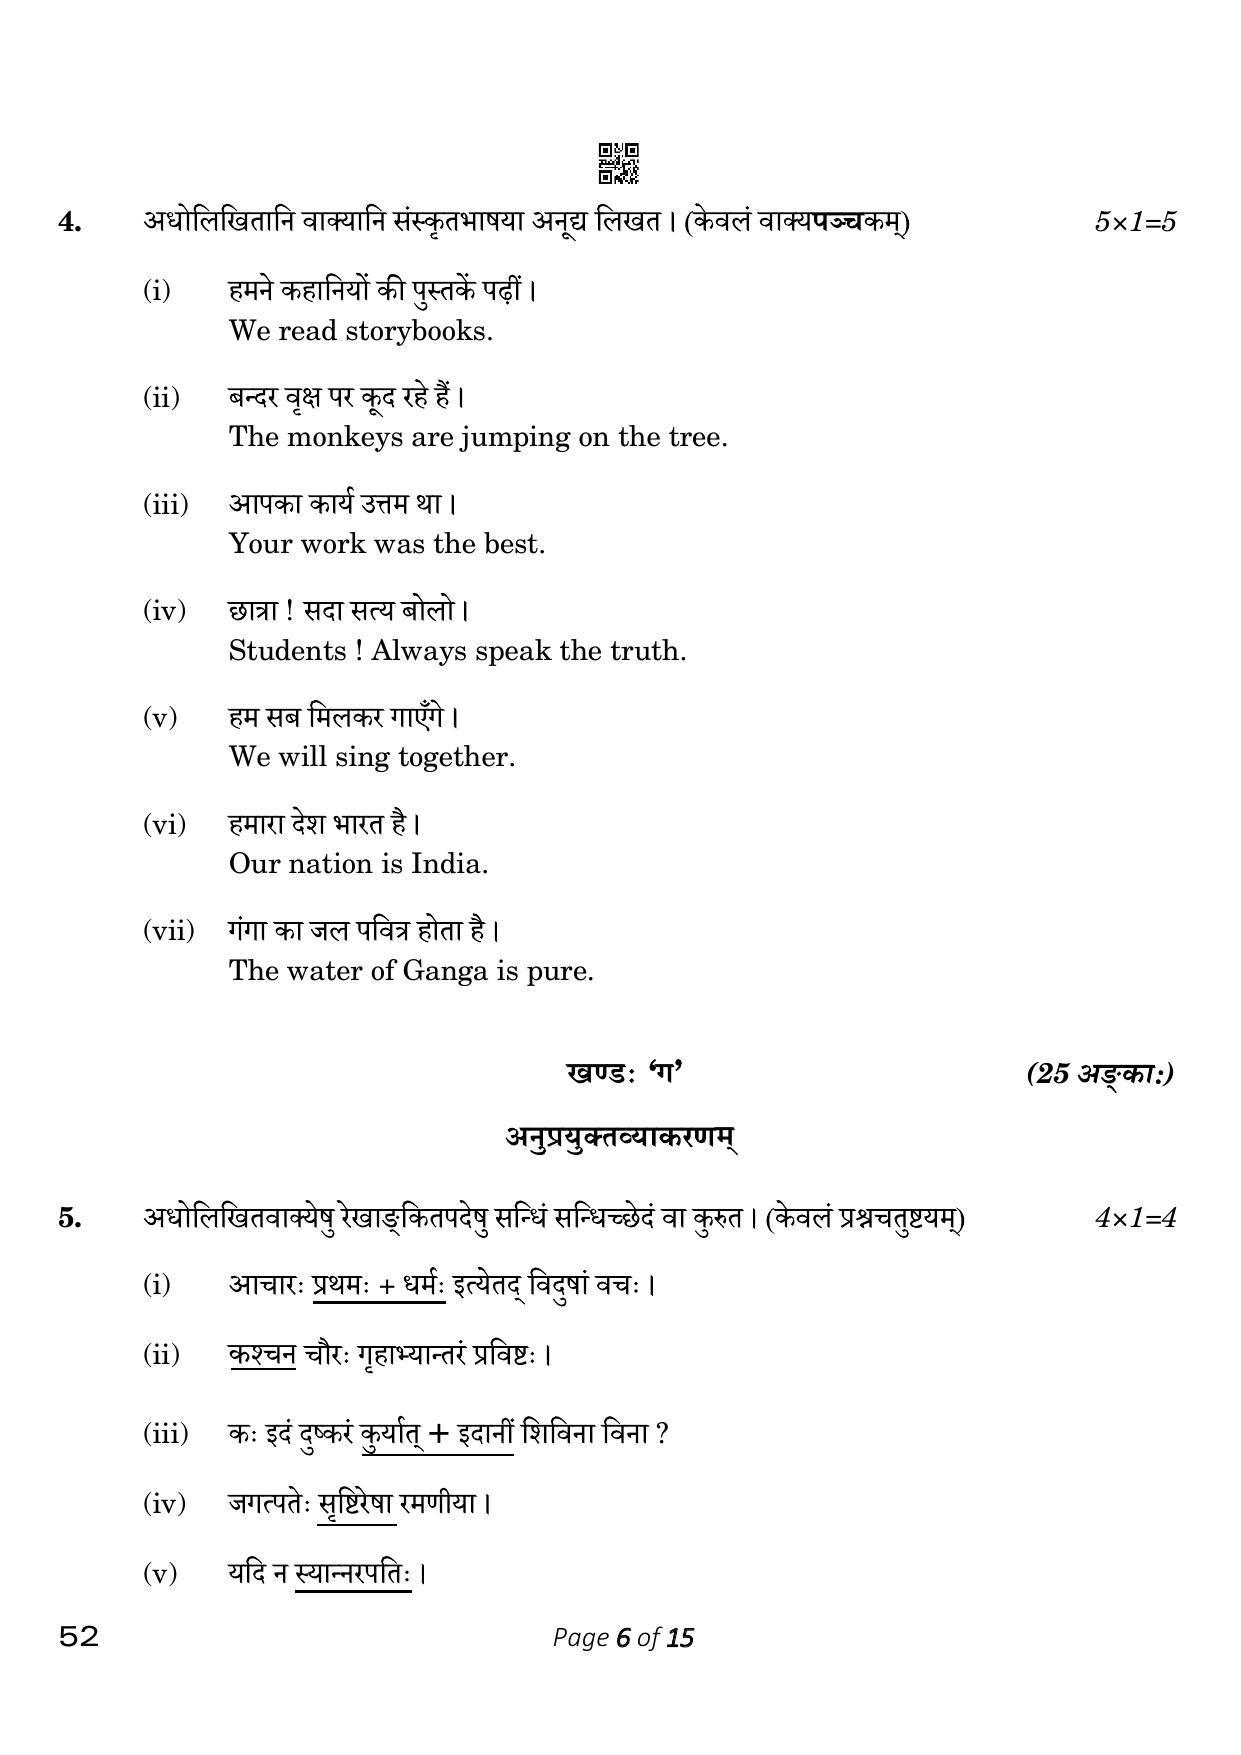 CBSE Class 10 Sanskrit (Compartment) 2023 Question Paper - Page 6